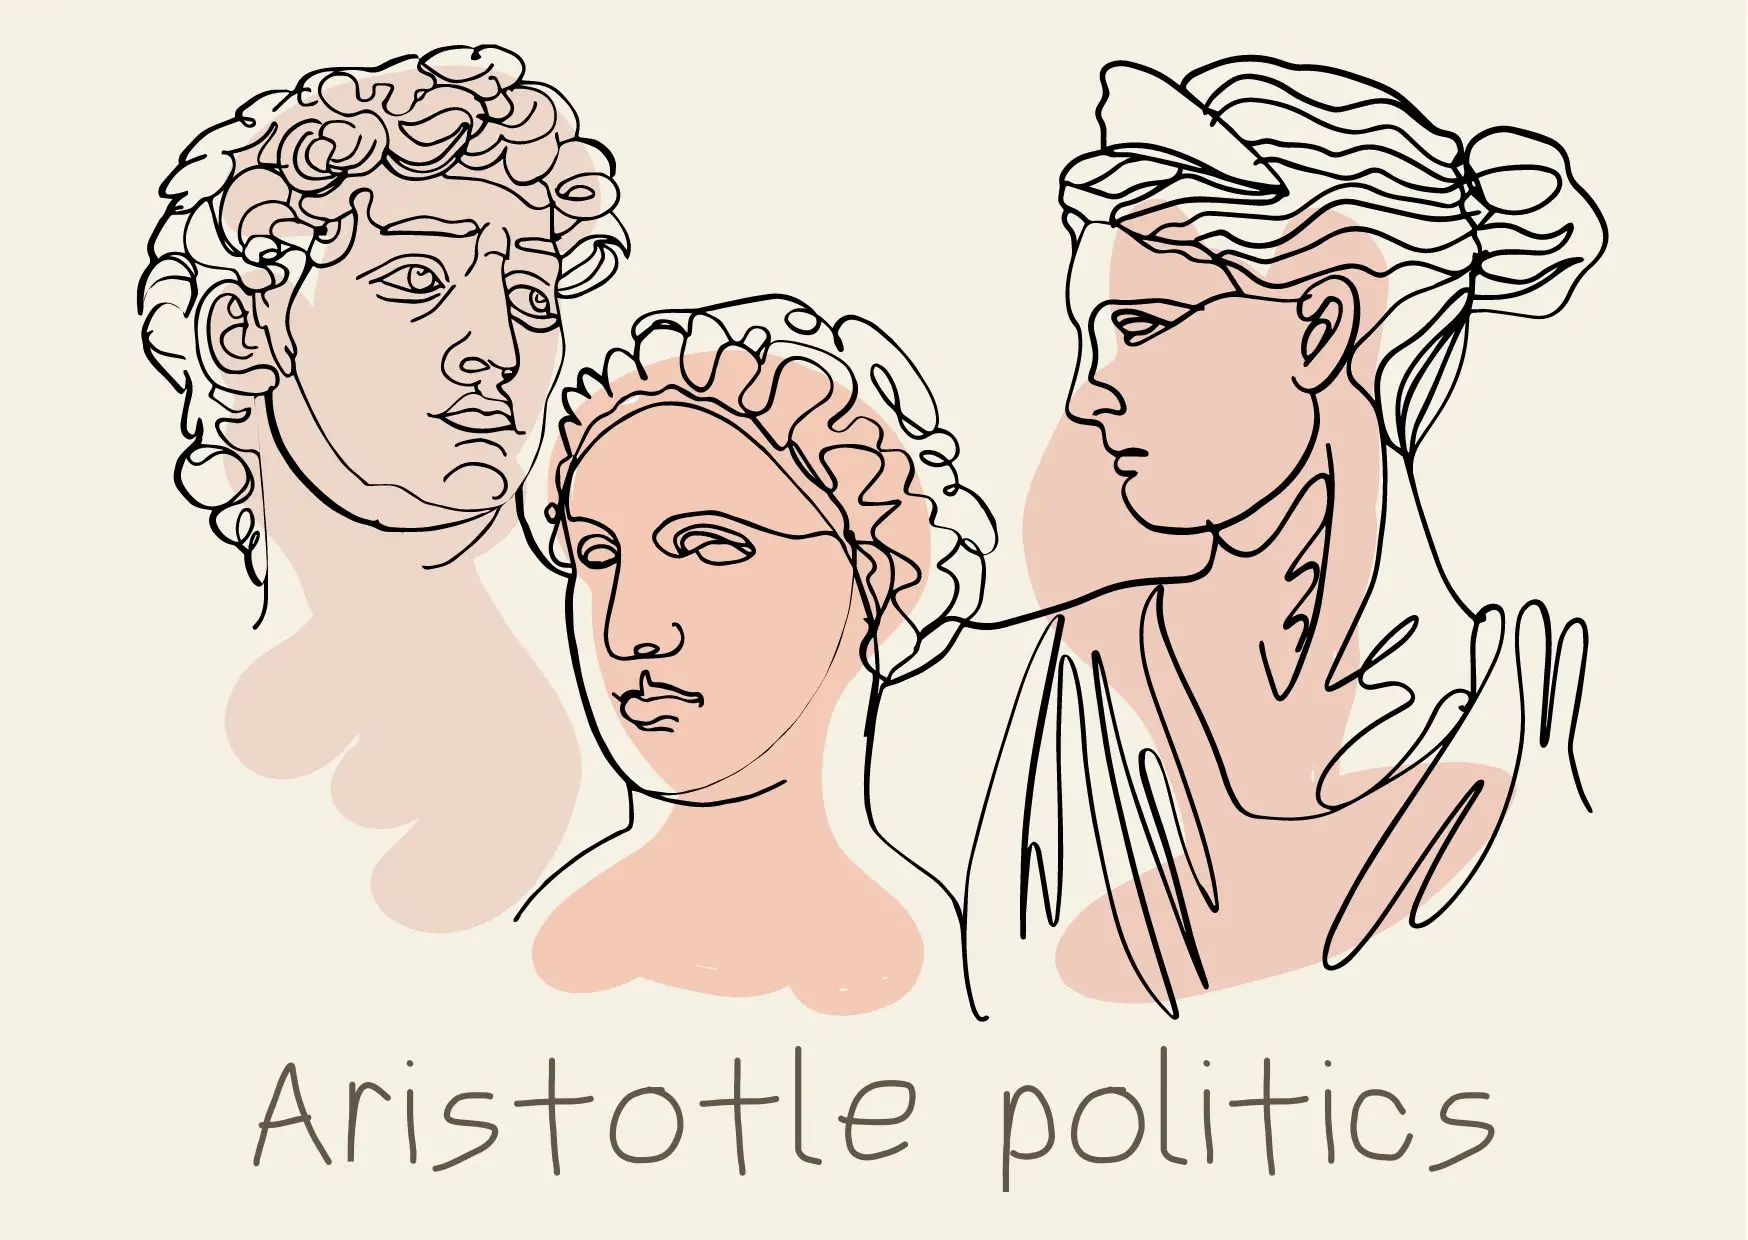 La politica aristotelica: Riassunto, analisi, Democrazia, felicità.